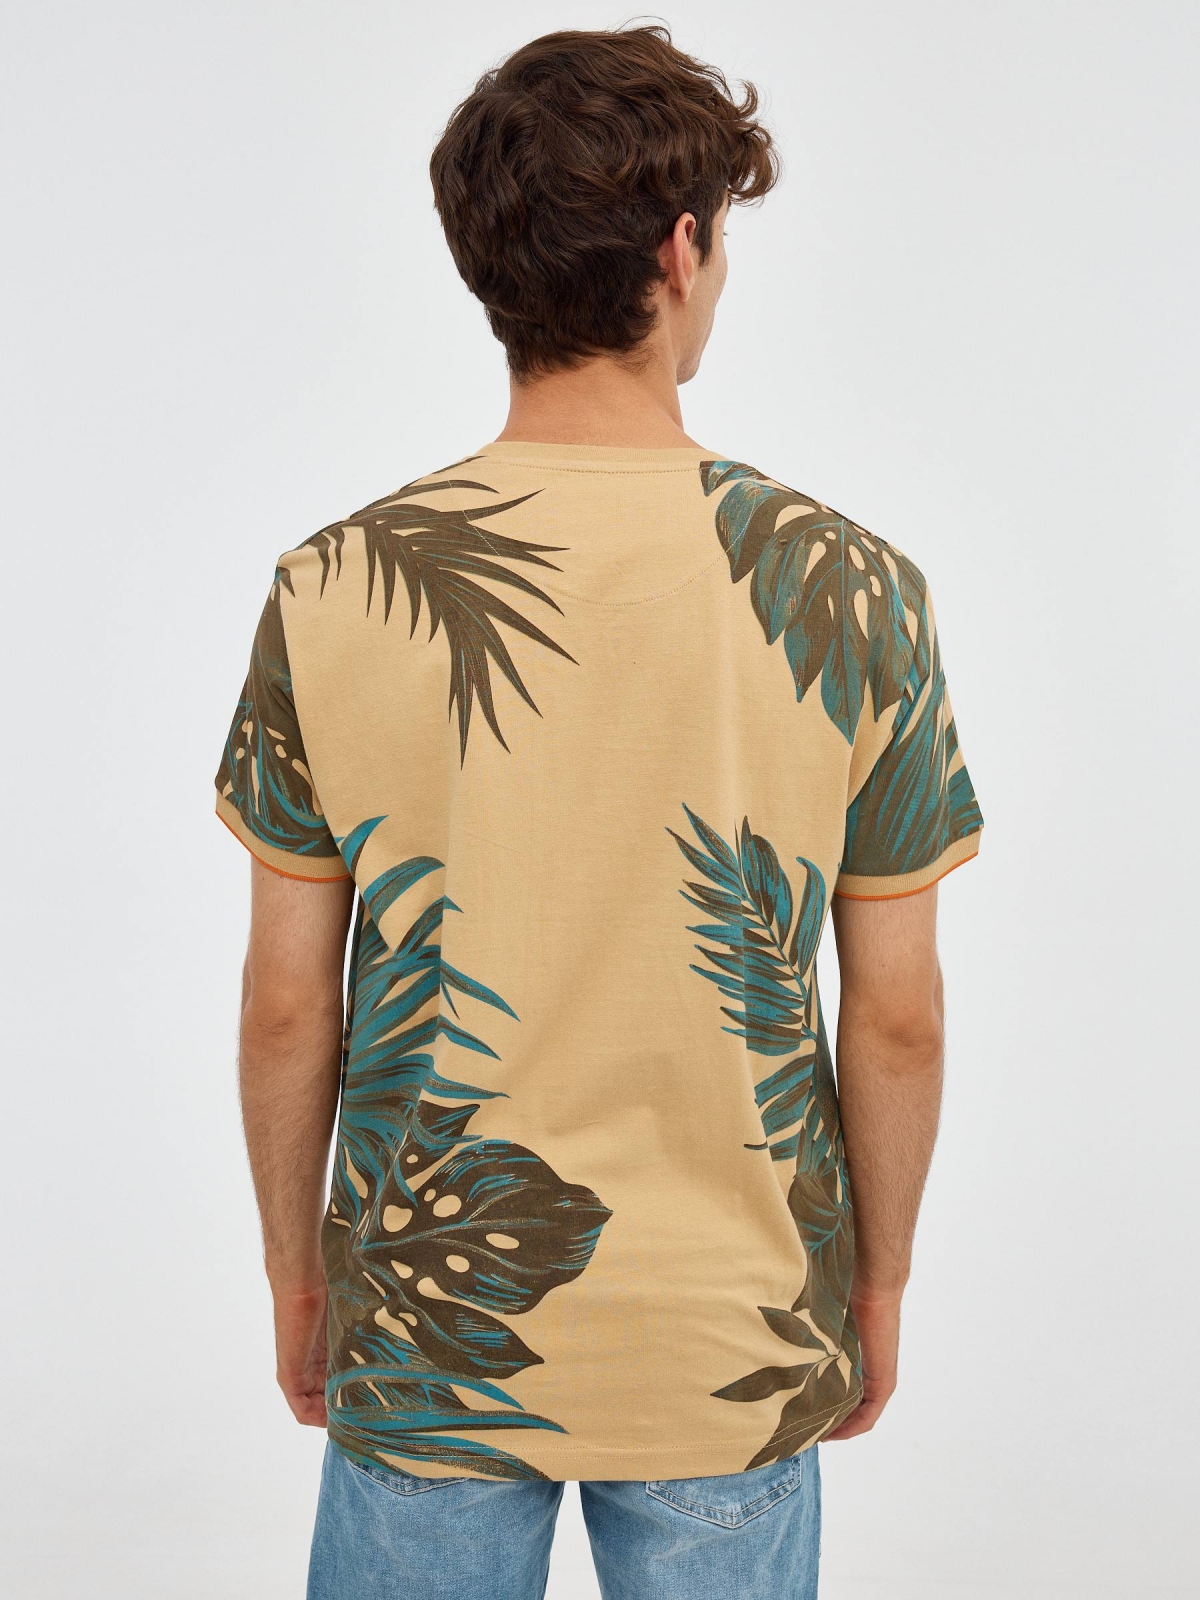 Camiseta hojas tropicales marrón tierra vista media trasera